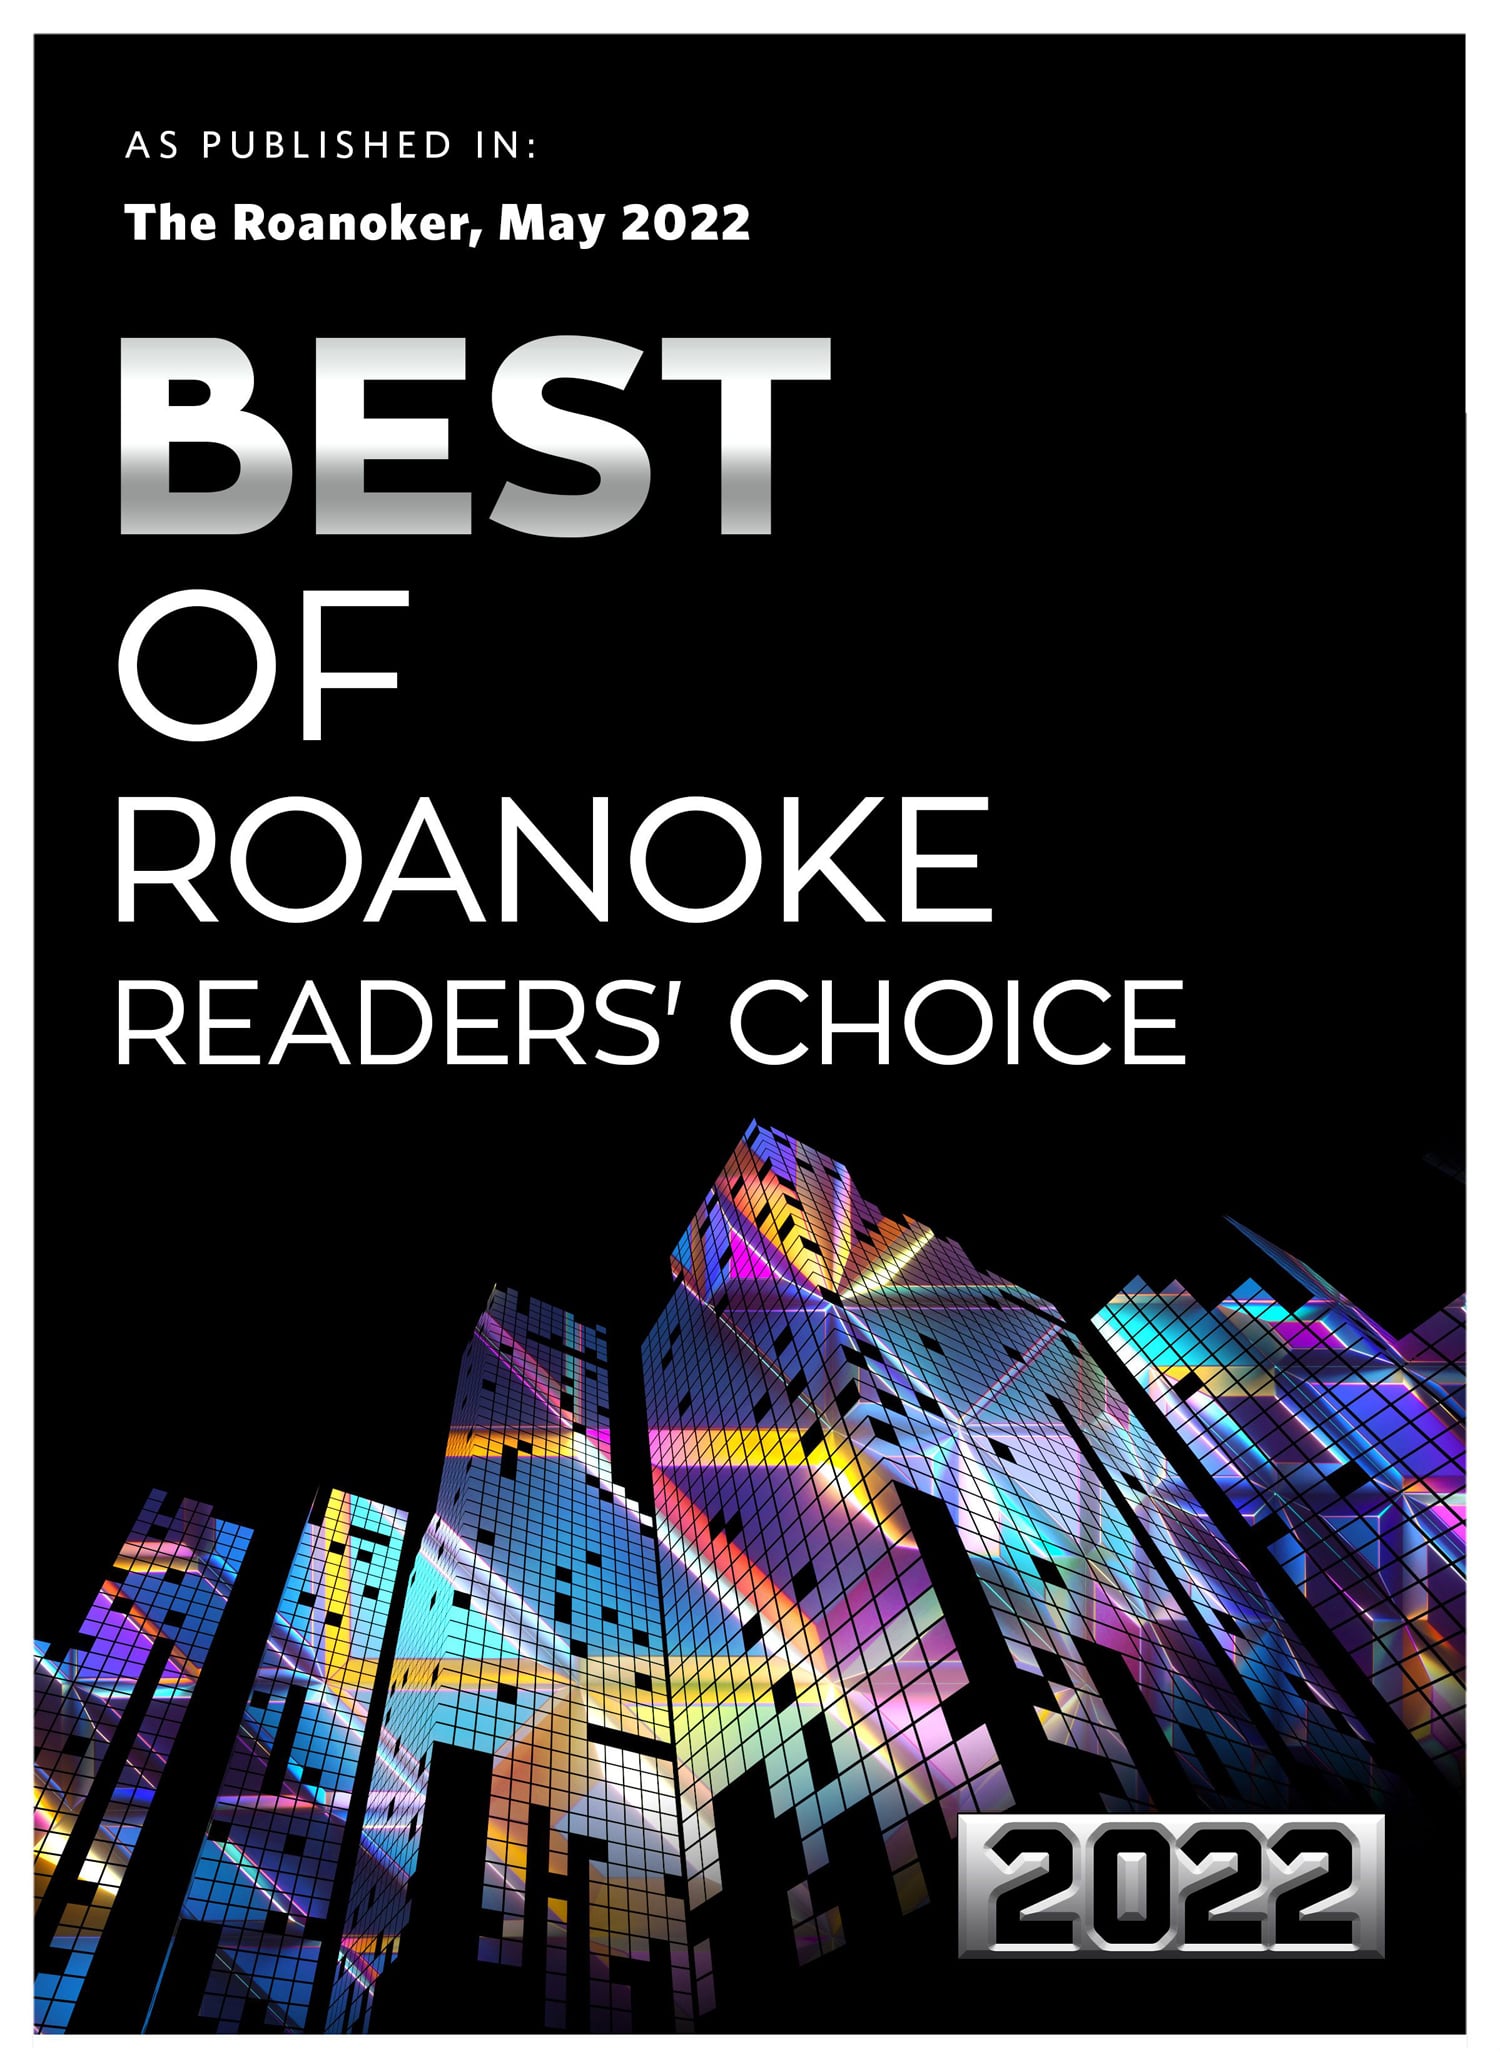 Best of Roanoke